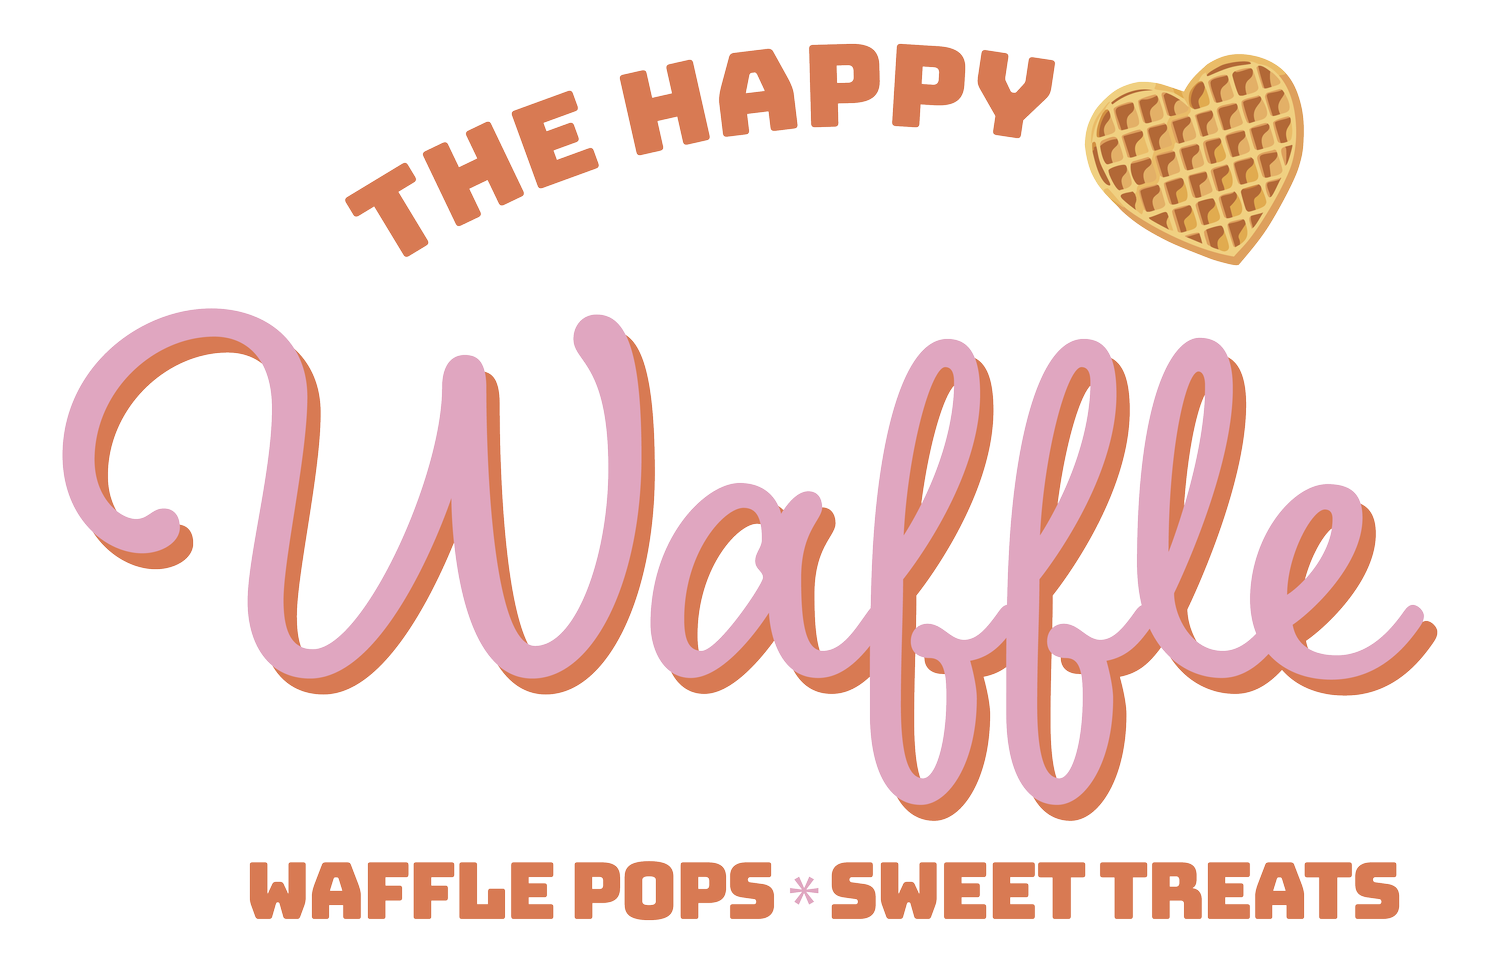 The Happy Waffle